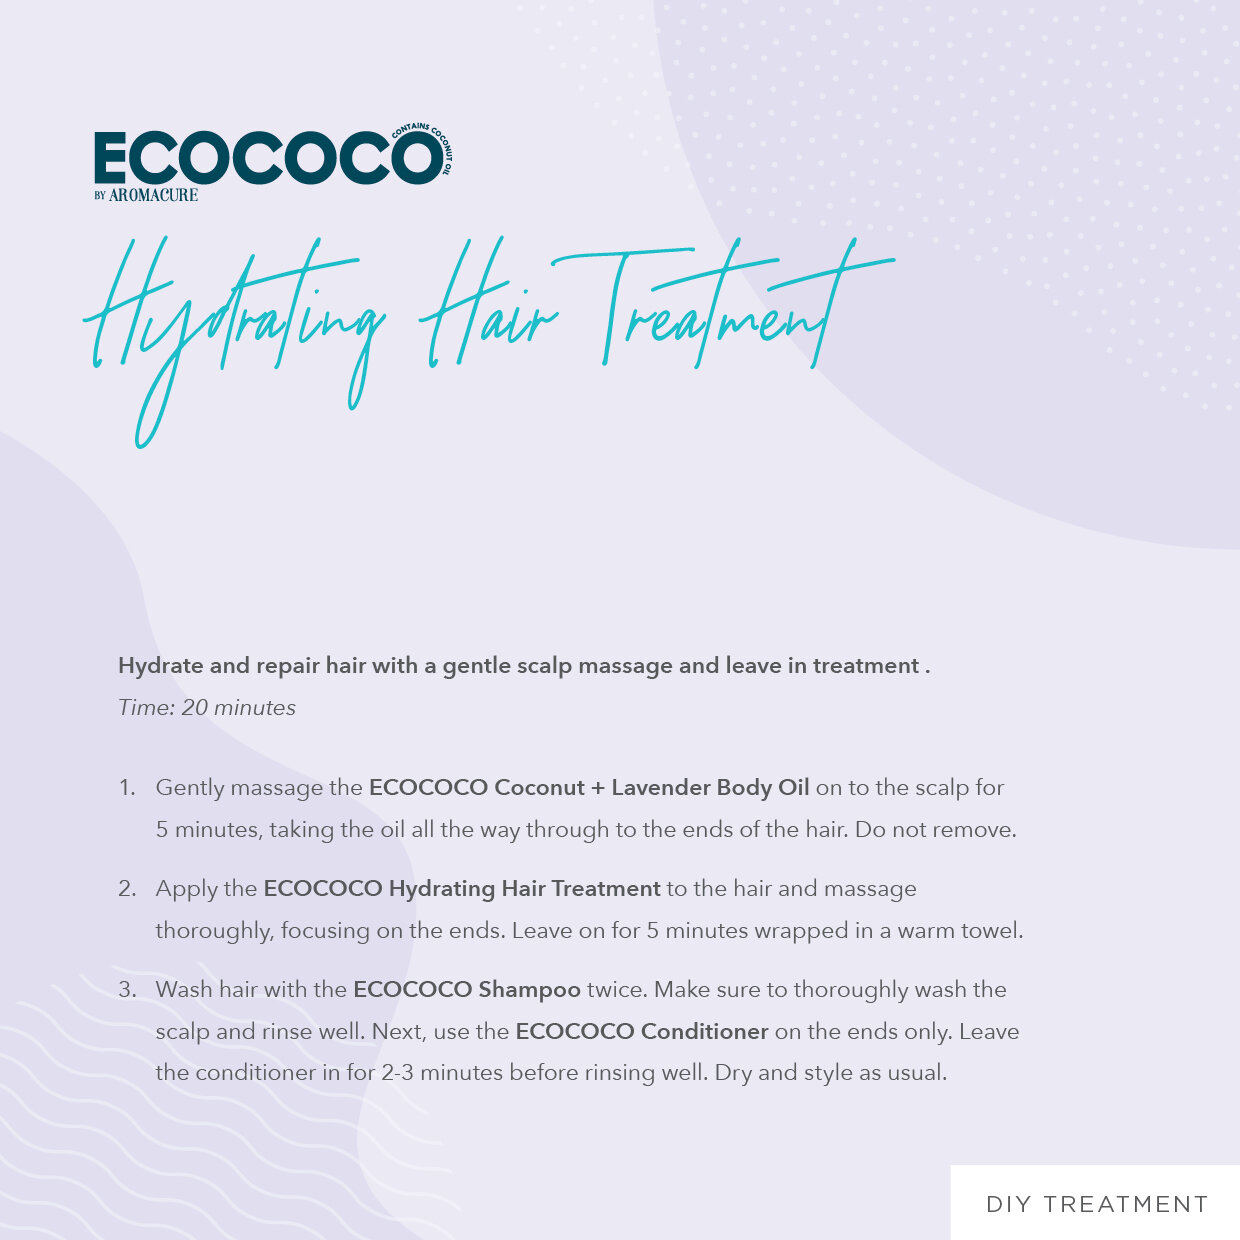 03 Ecococo Hair Treatment02.jpg